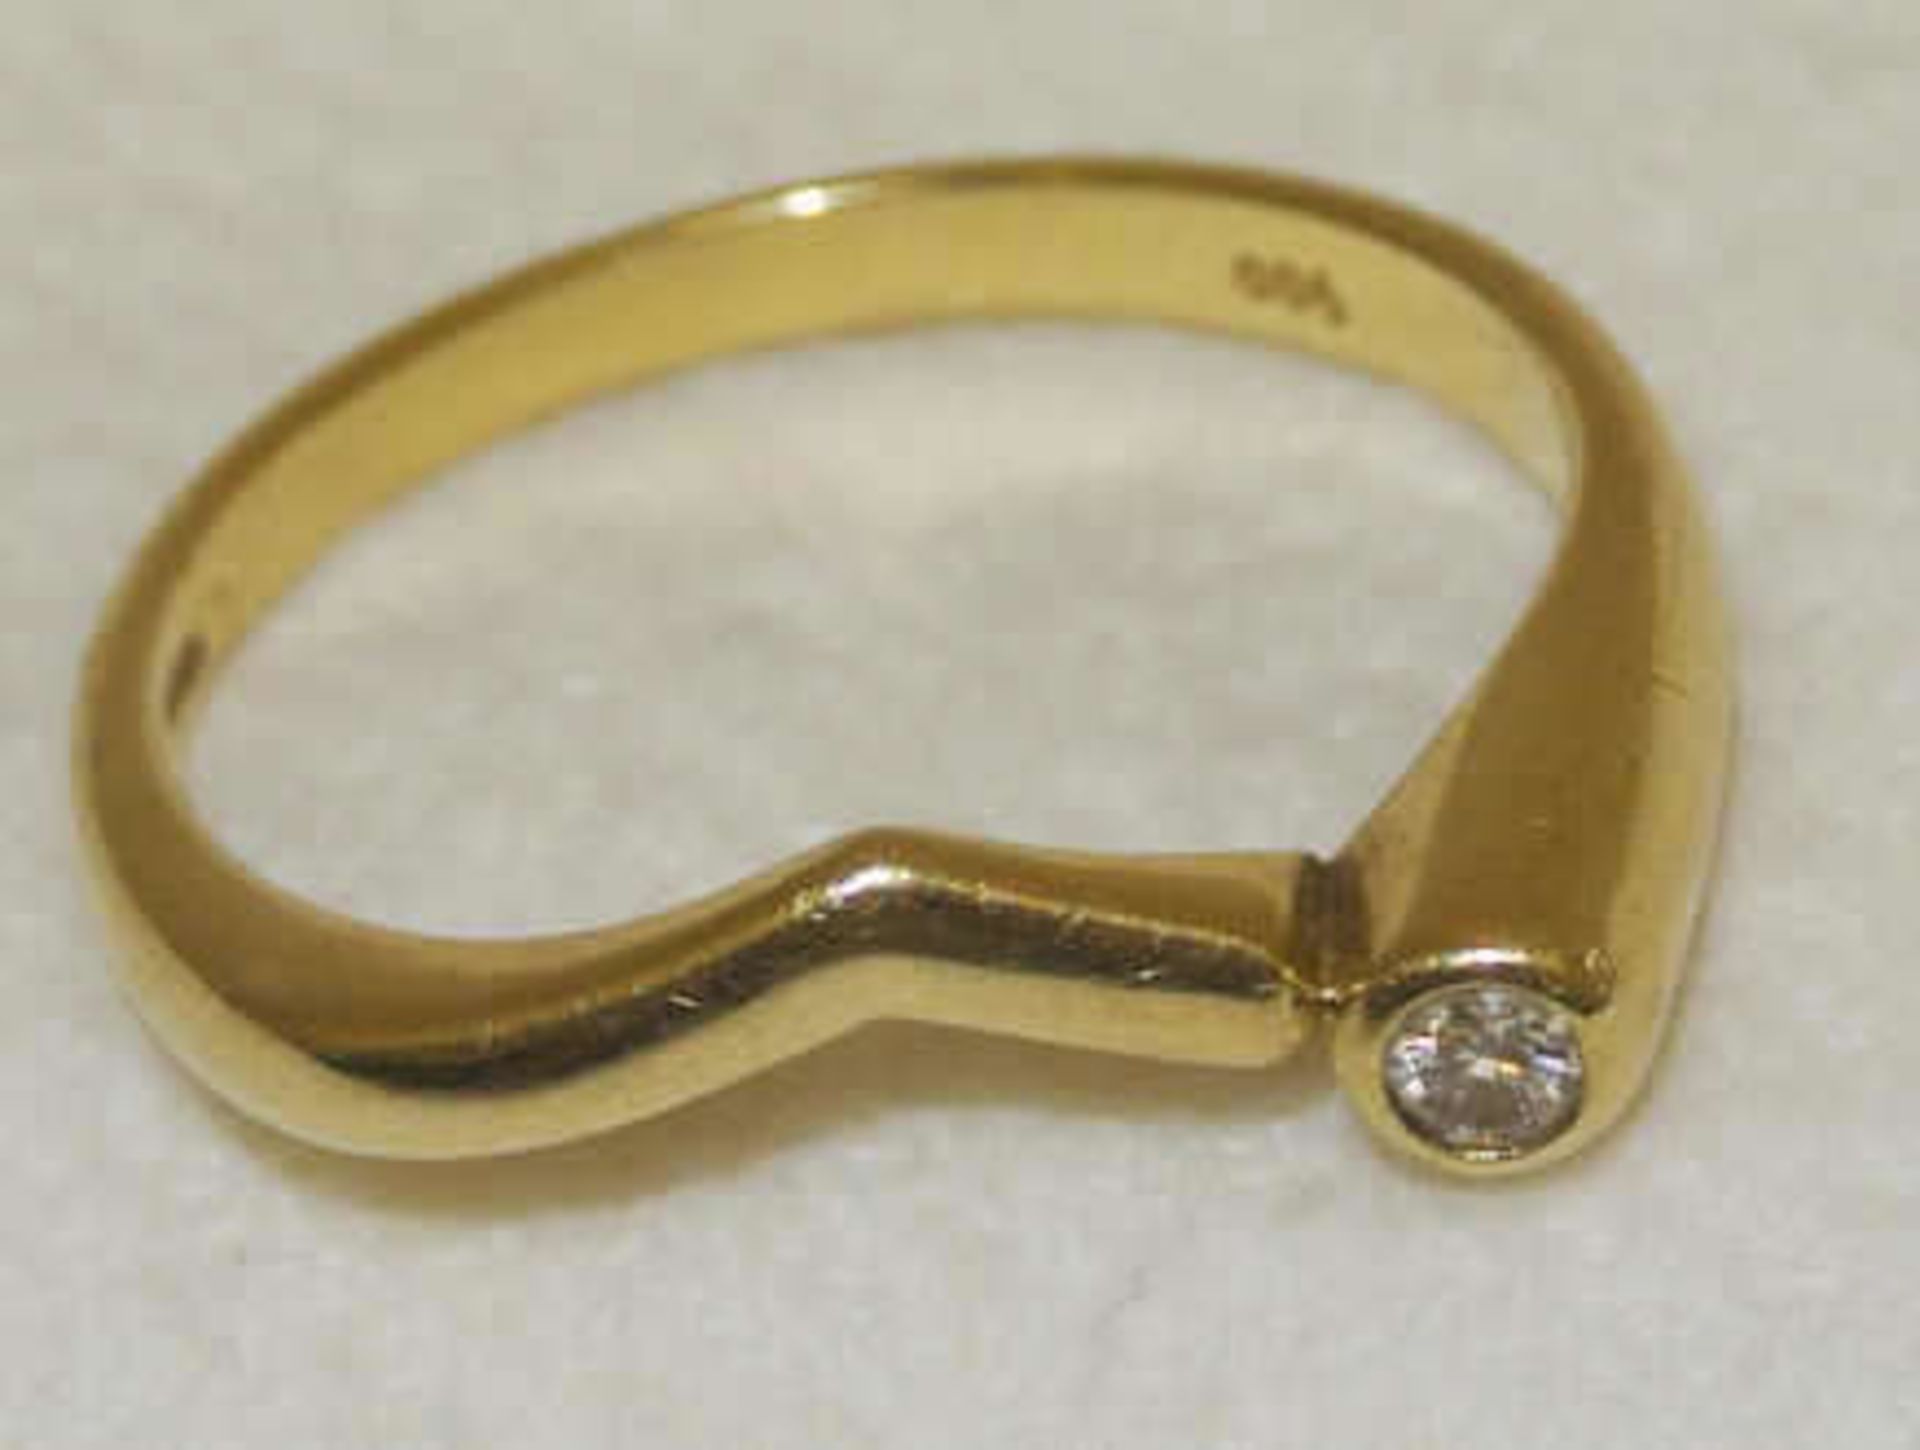 Damenring, 585er Gelbgold, besetzt mit 1 Diamanten, ca. 0,09 ct. Ringgröße 56, Gewicht ca. 2,27 gr